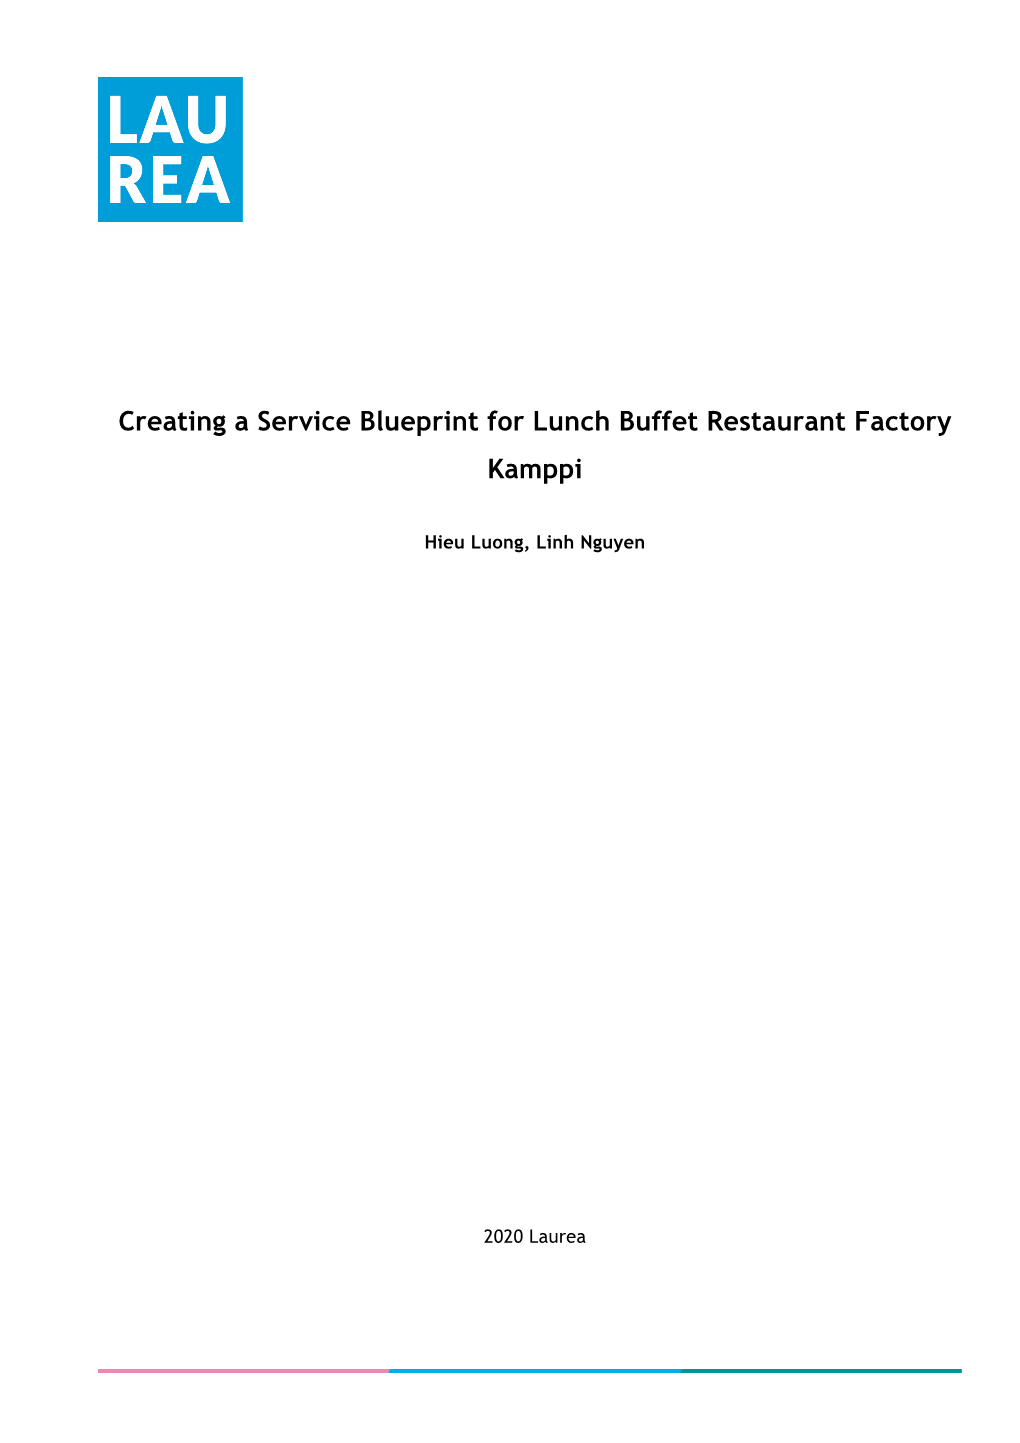 Creating a Service Blueprint for Lunch Buffet Restaurant Factory Kamppi